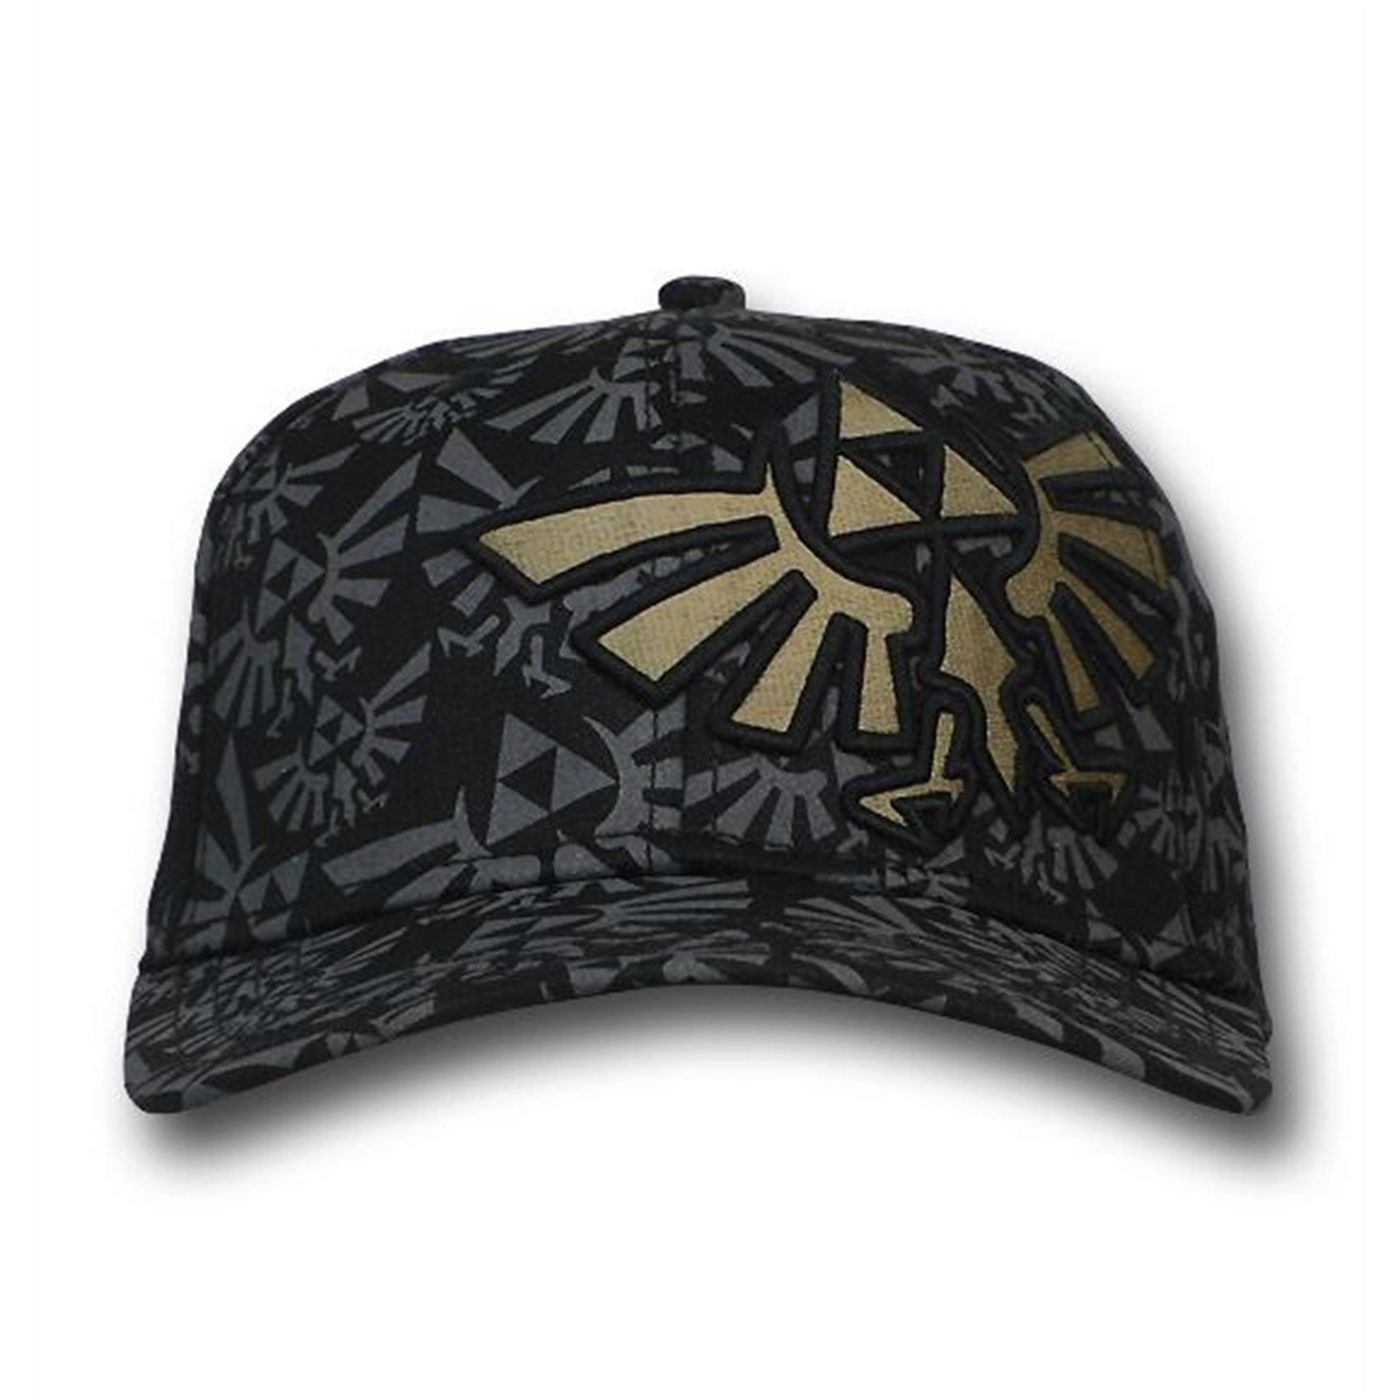 Legend of Zelda Symbol Sublimated Embroidered Cap